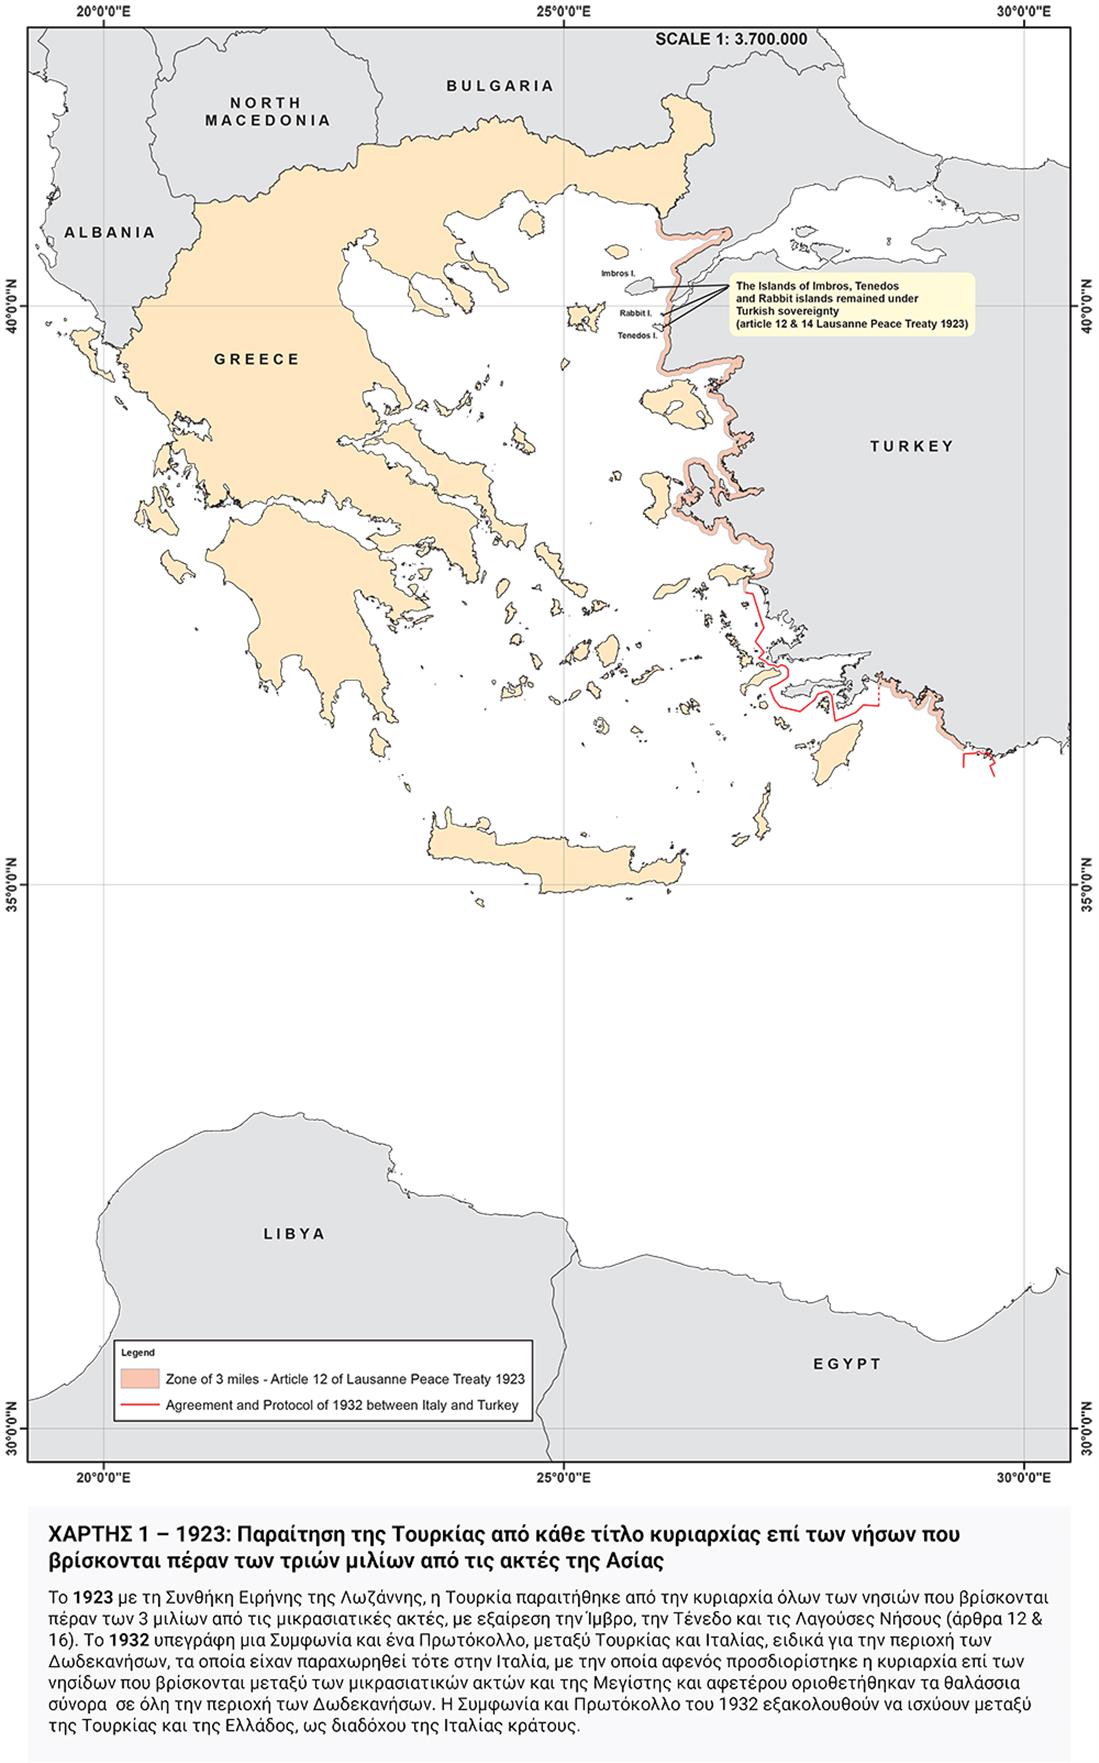 χάρτες - τουρκικός αναθεωρητισμός - Υπουργείο Εξωτερικών - 1